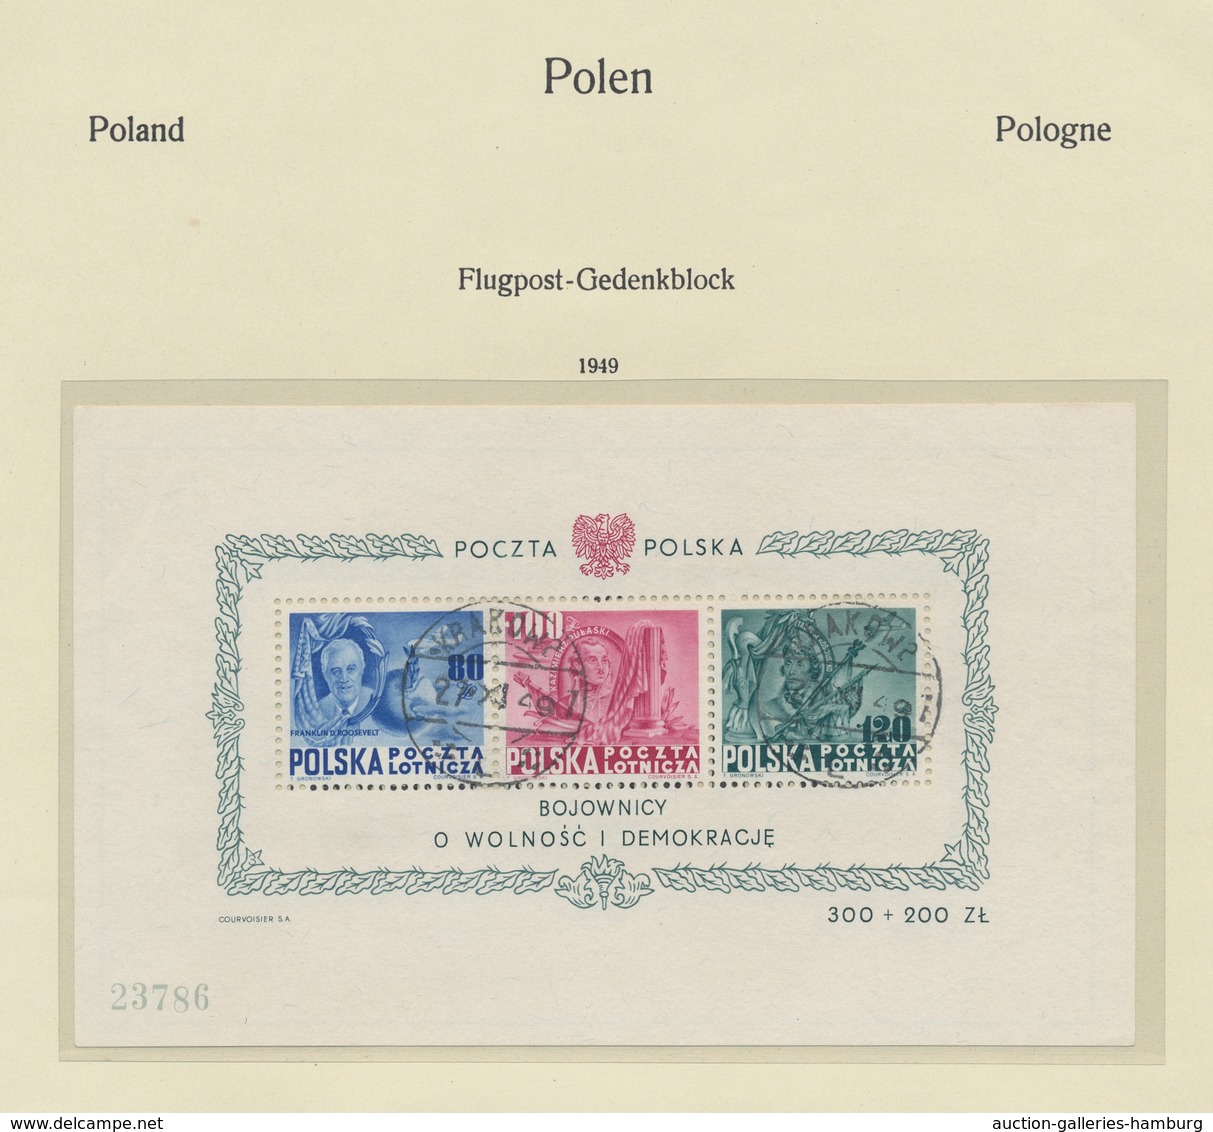 Polen: 1918-1969, überwiegend gestempelte Sammlung in 2 Vordruckalben mit einigen besseren Werten wi